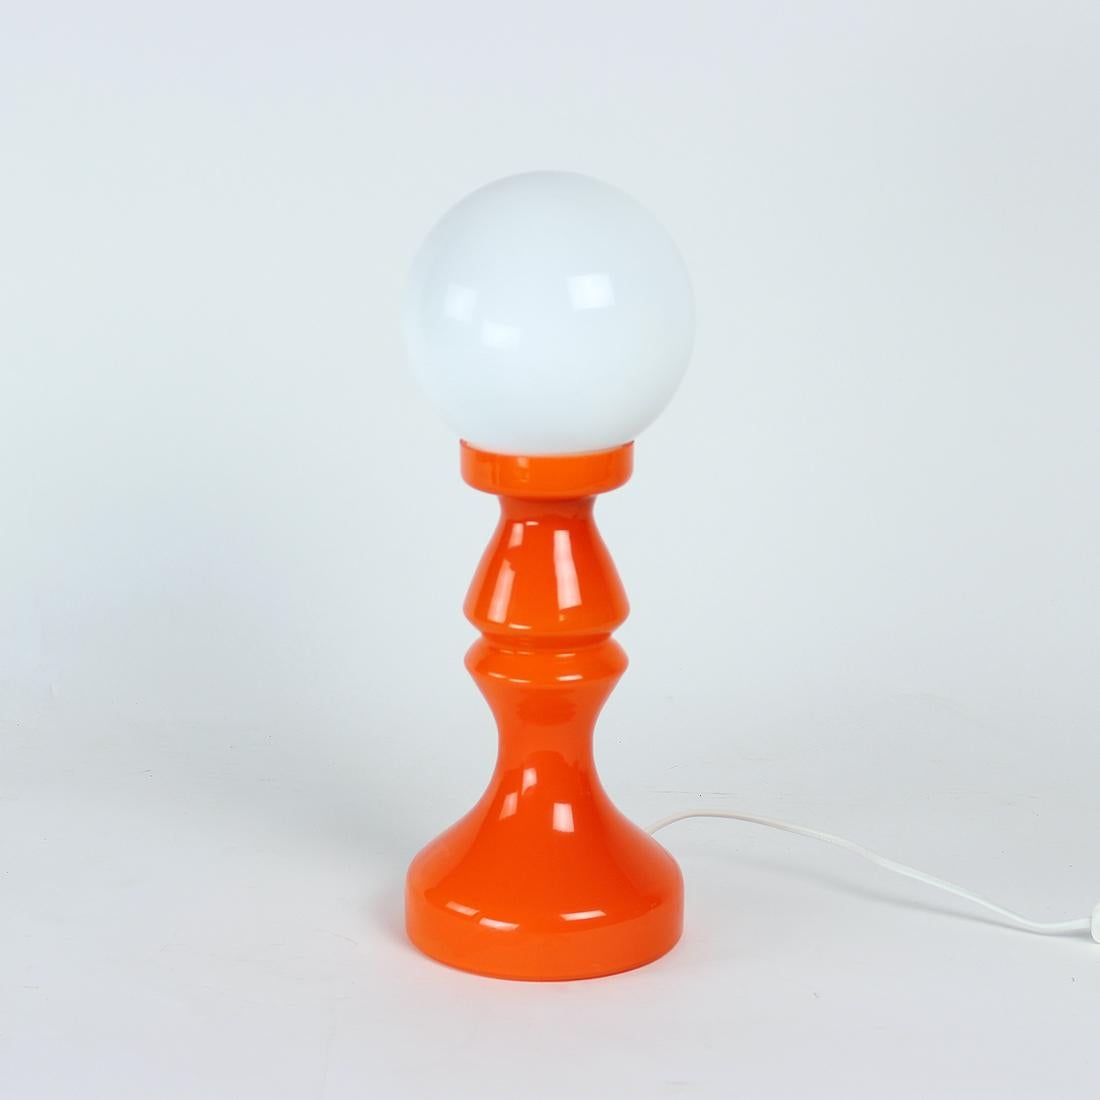 Unique Orange Glass Table Lamp by Vitropol, Poland, 1960s For Sale 3